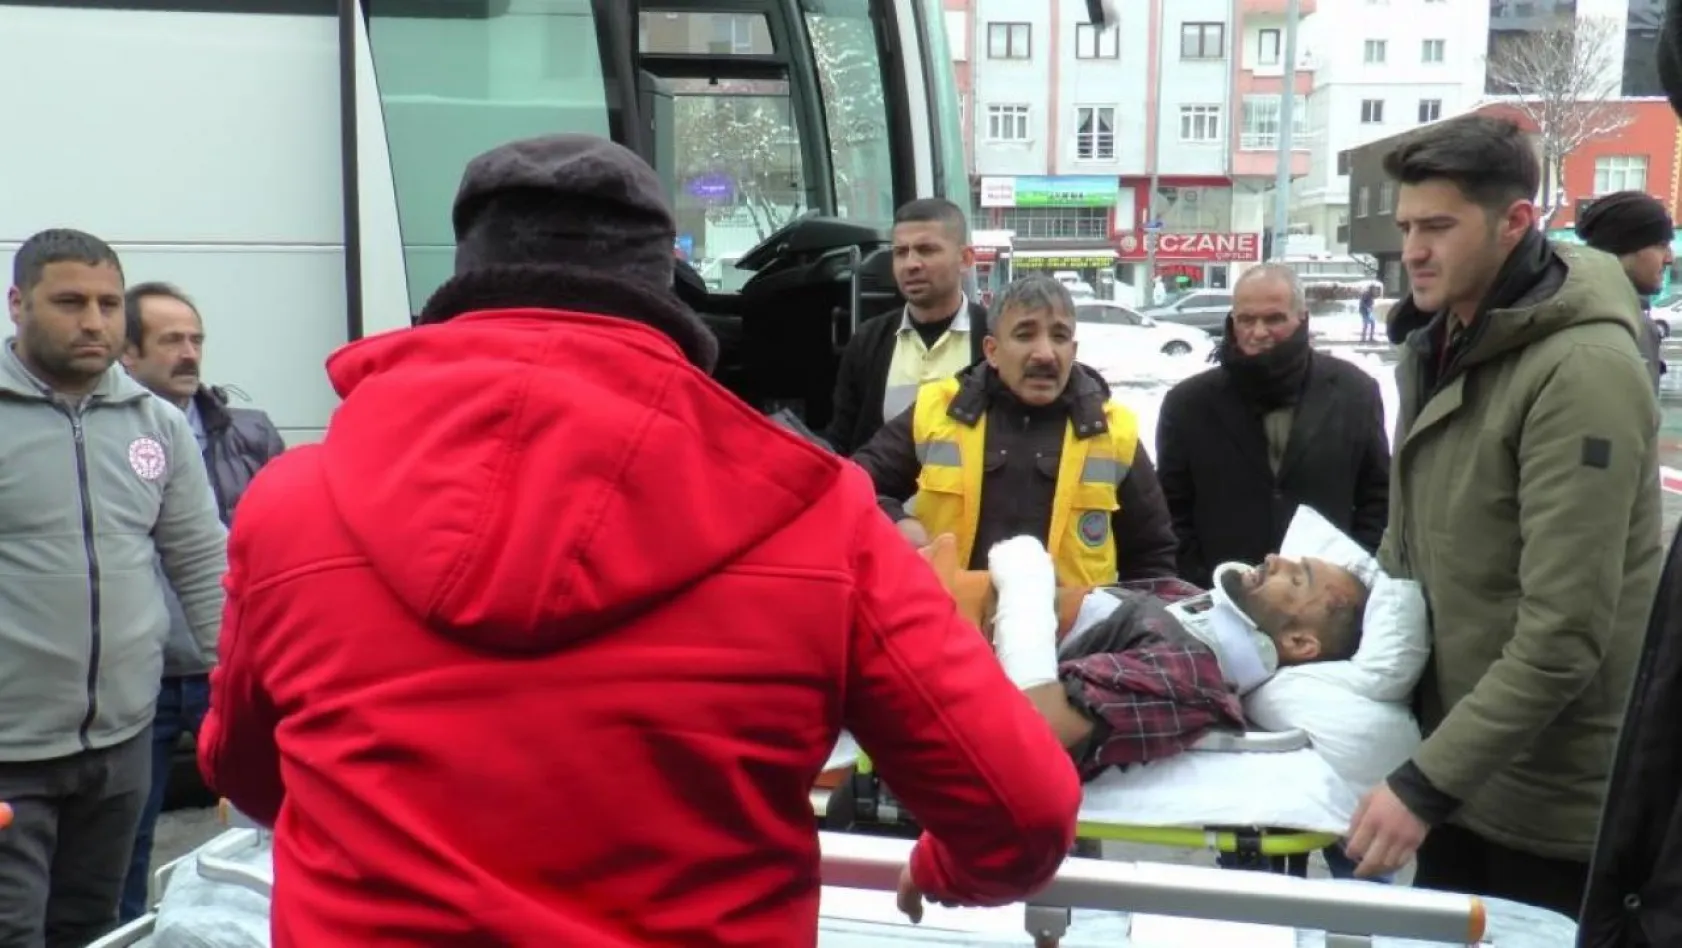 Deprem bölgesinden Kayseri'ye getirilen yaralı sayısı bin 100 oldu